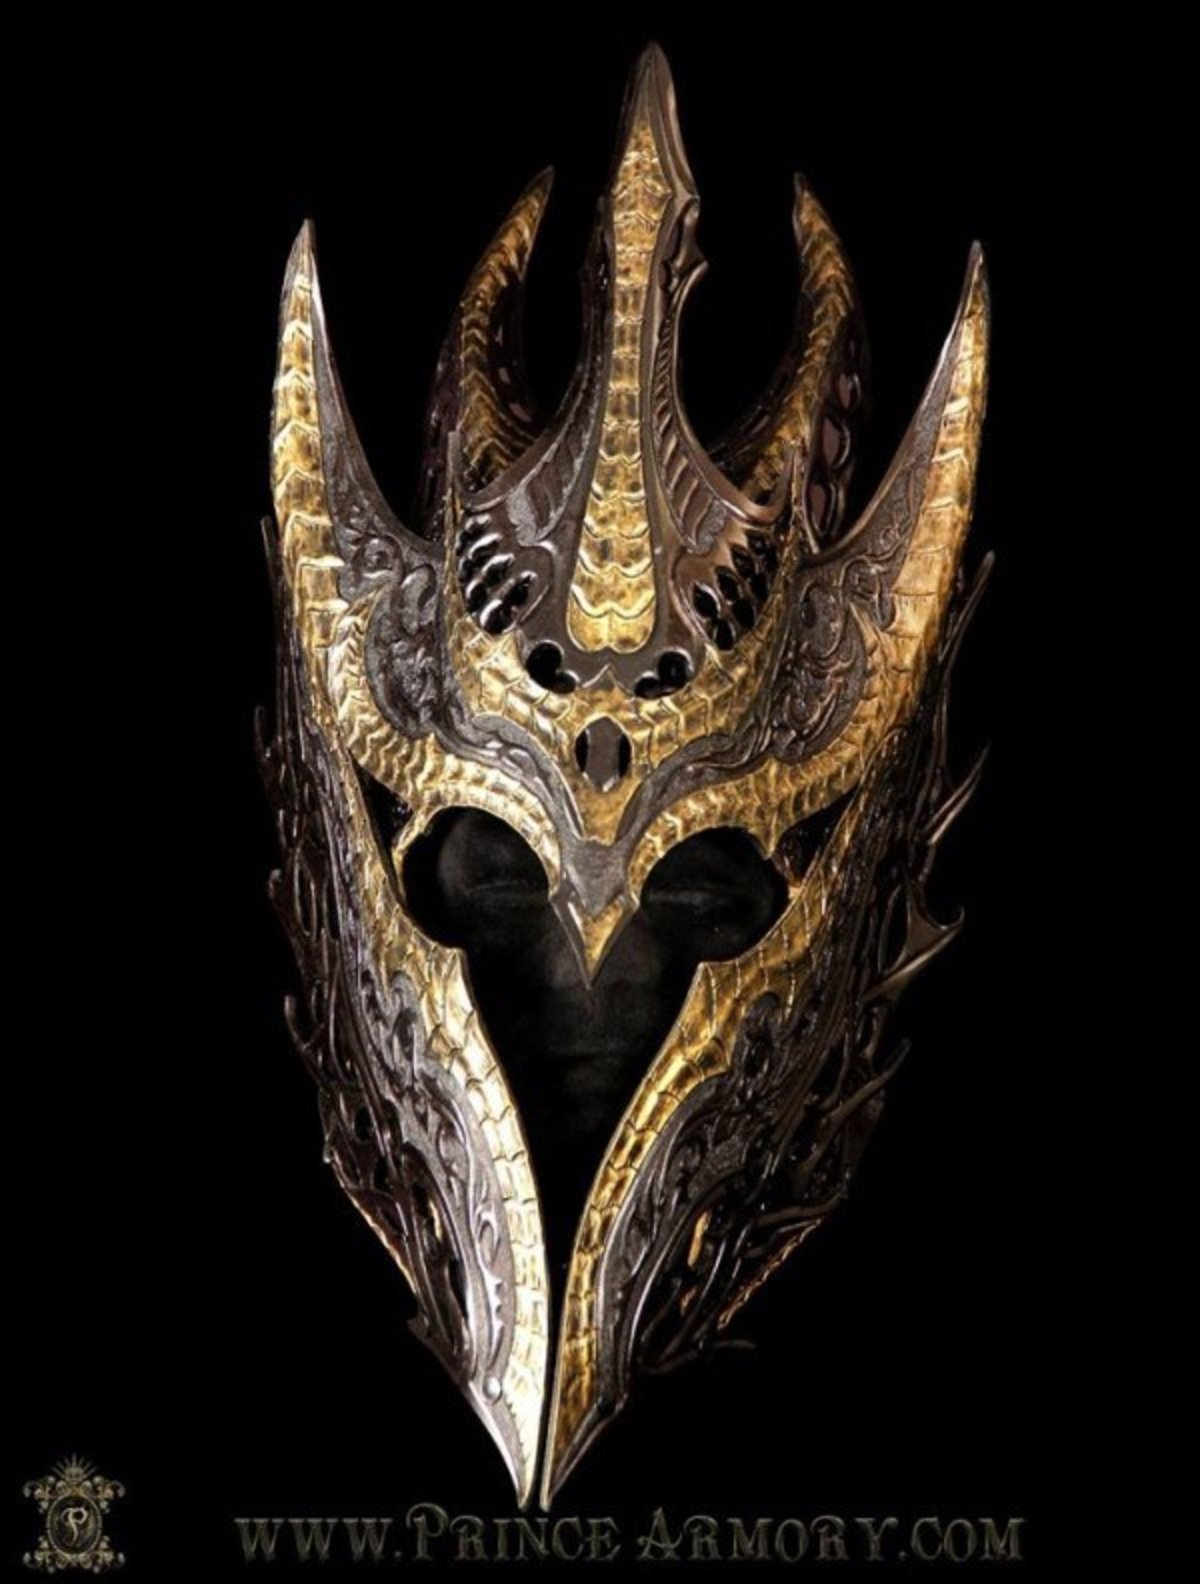 El Señor de los Anillos: Reproducen la armadura de Sauron en la Primera Edad